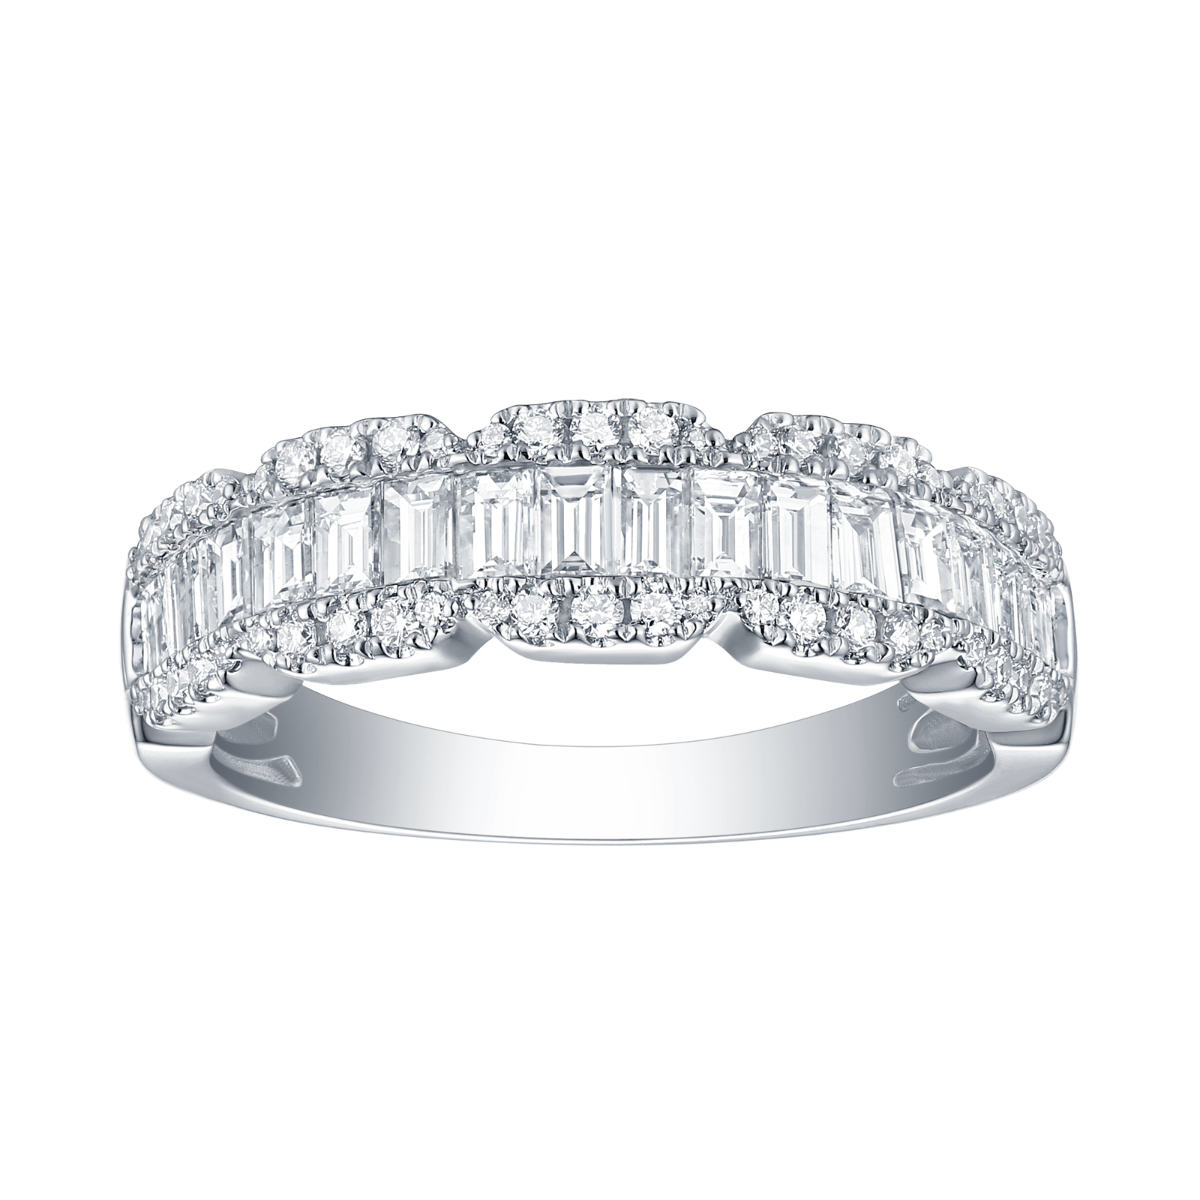 R31496WHT – 18K White Gold Diamond Ring, 1.1 TCW